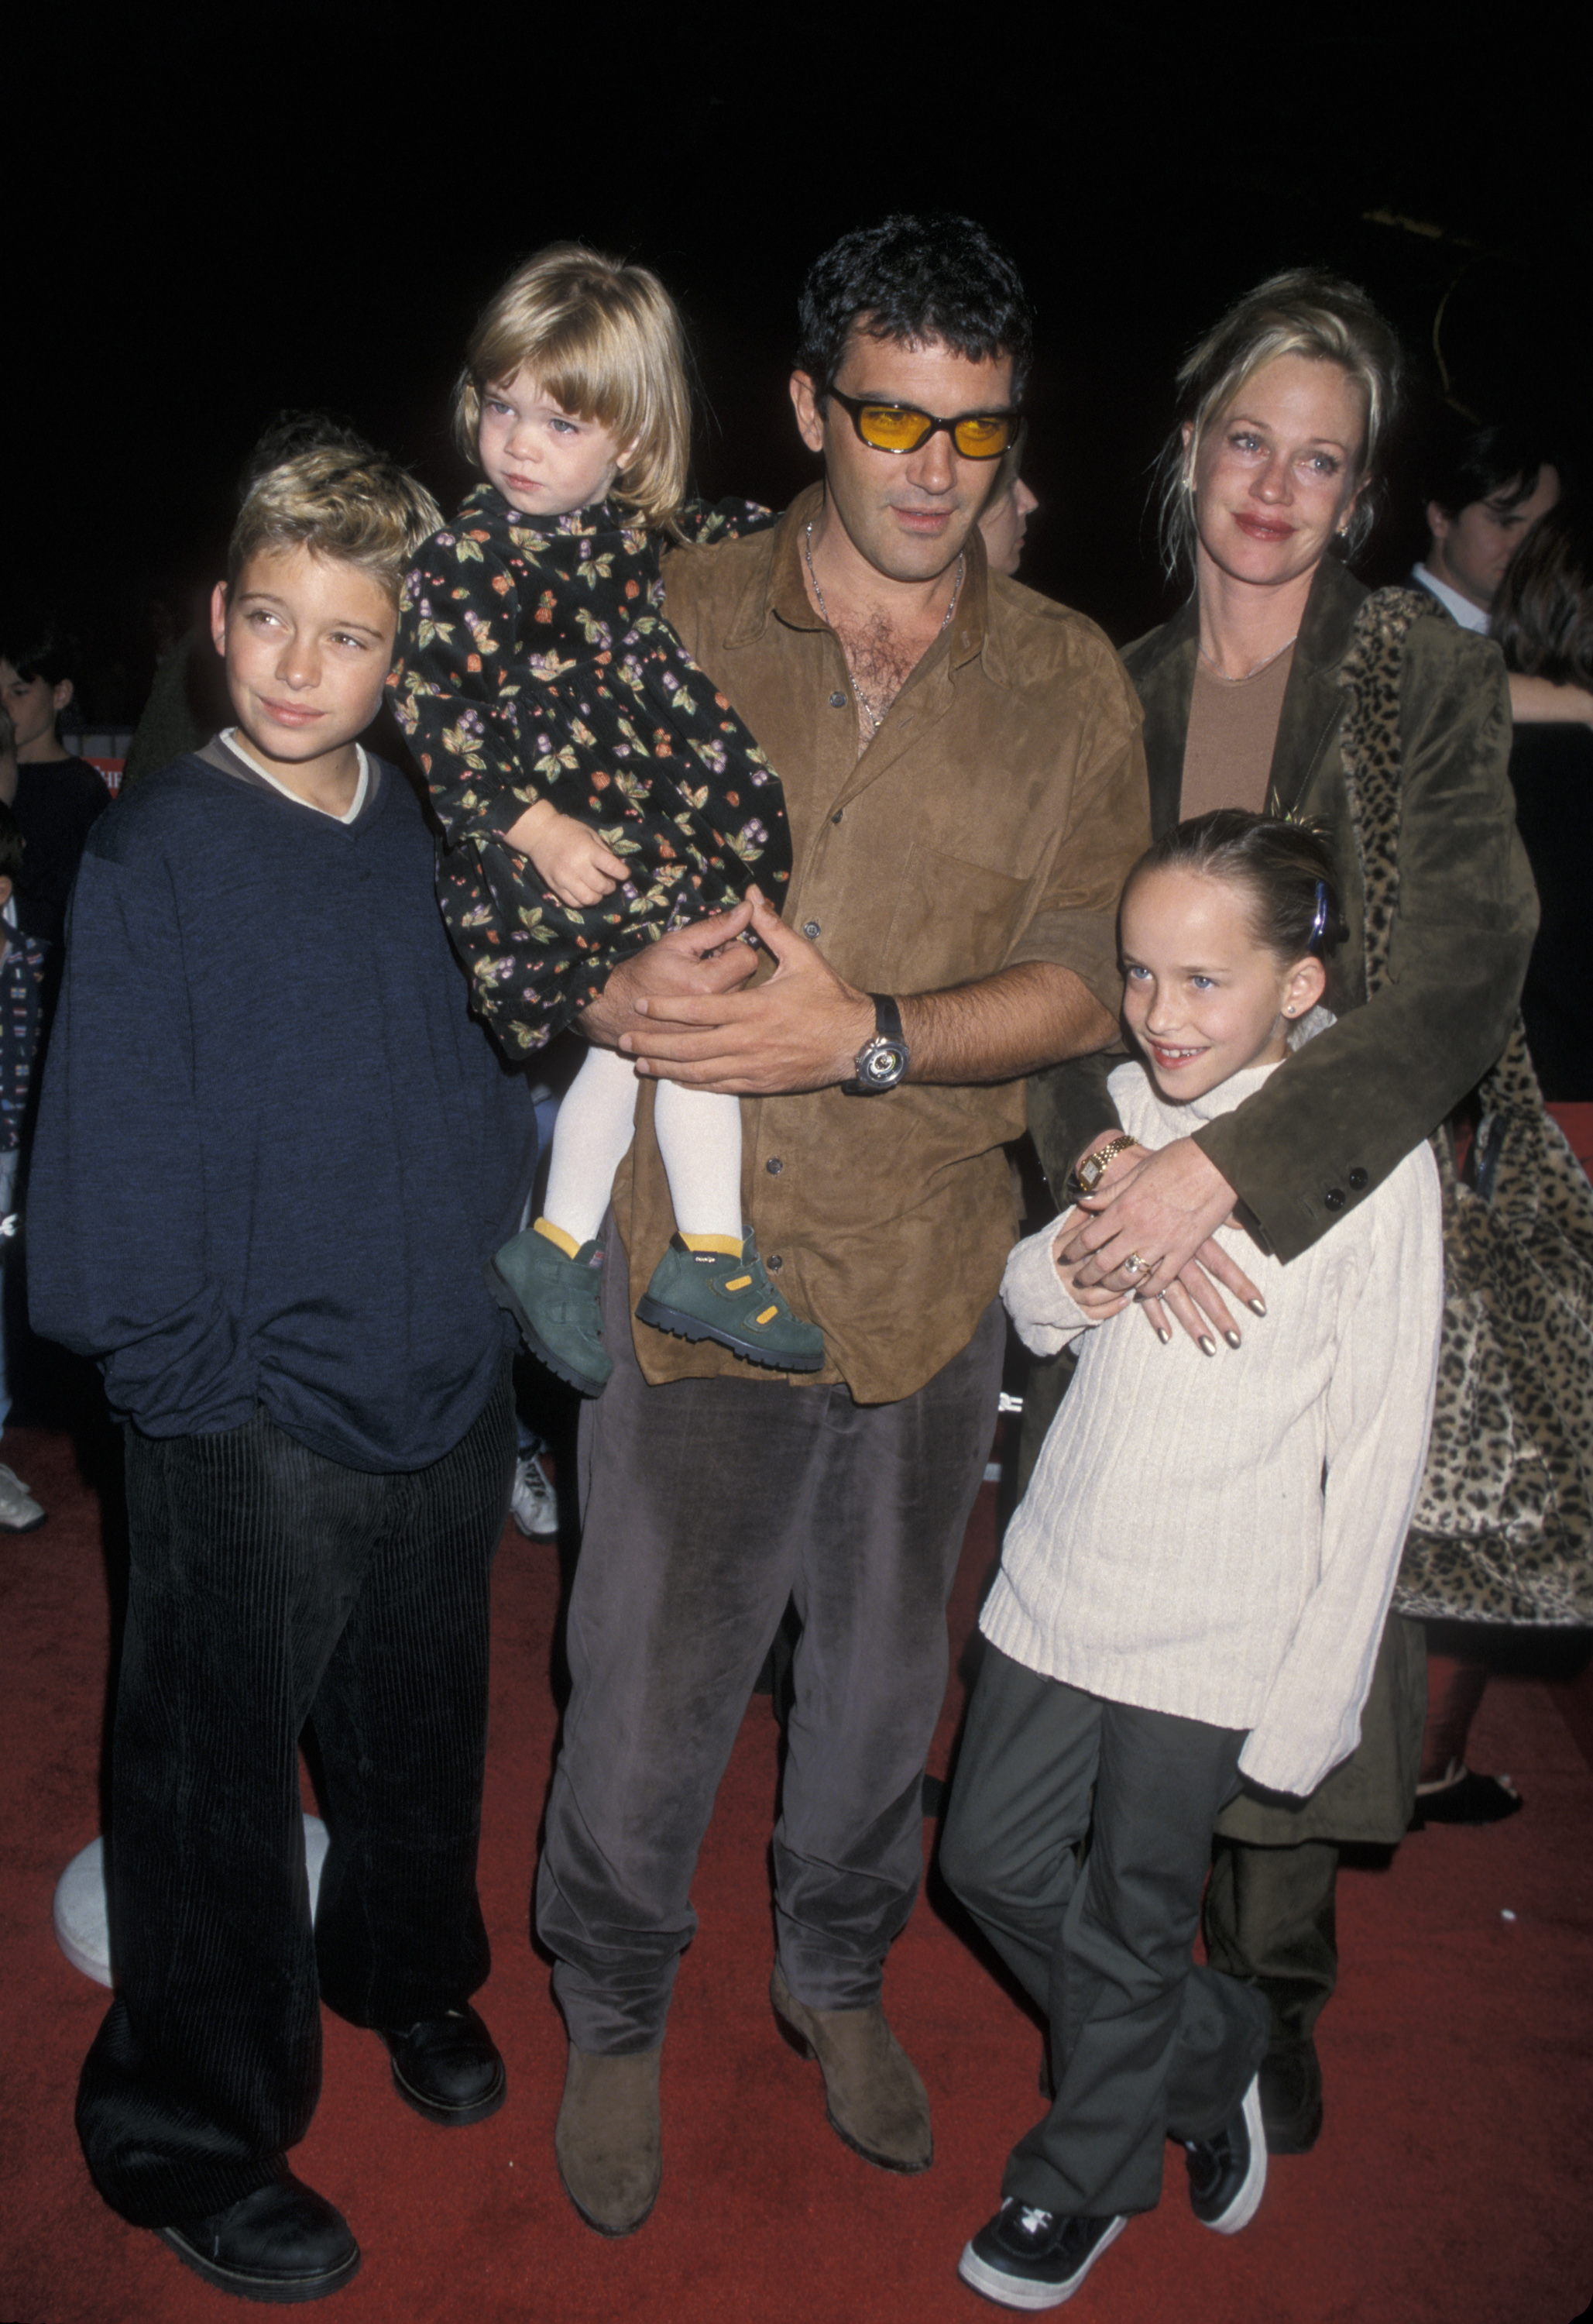 Antonio Banderas y Melanie Griffith con sus hijos Alexander Bauer, Stella Banderas y Dakota Johnson en Los Ángeles en 1998 | Foto: Getty Images